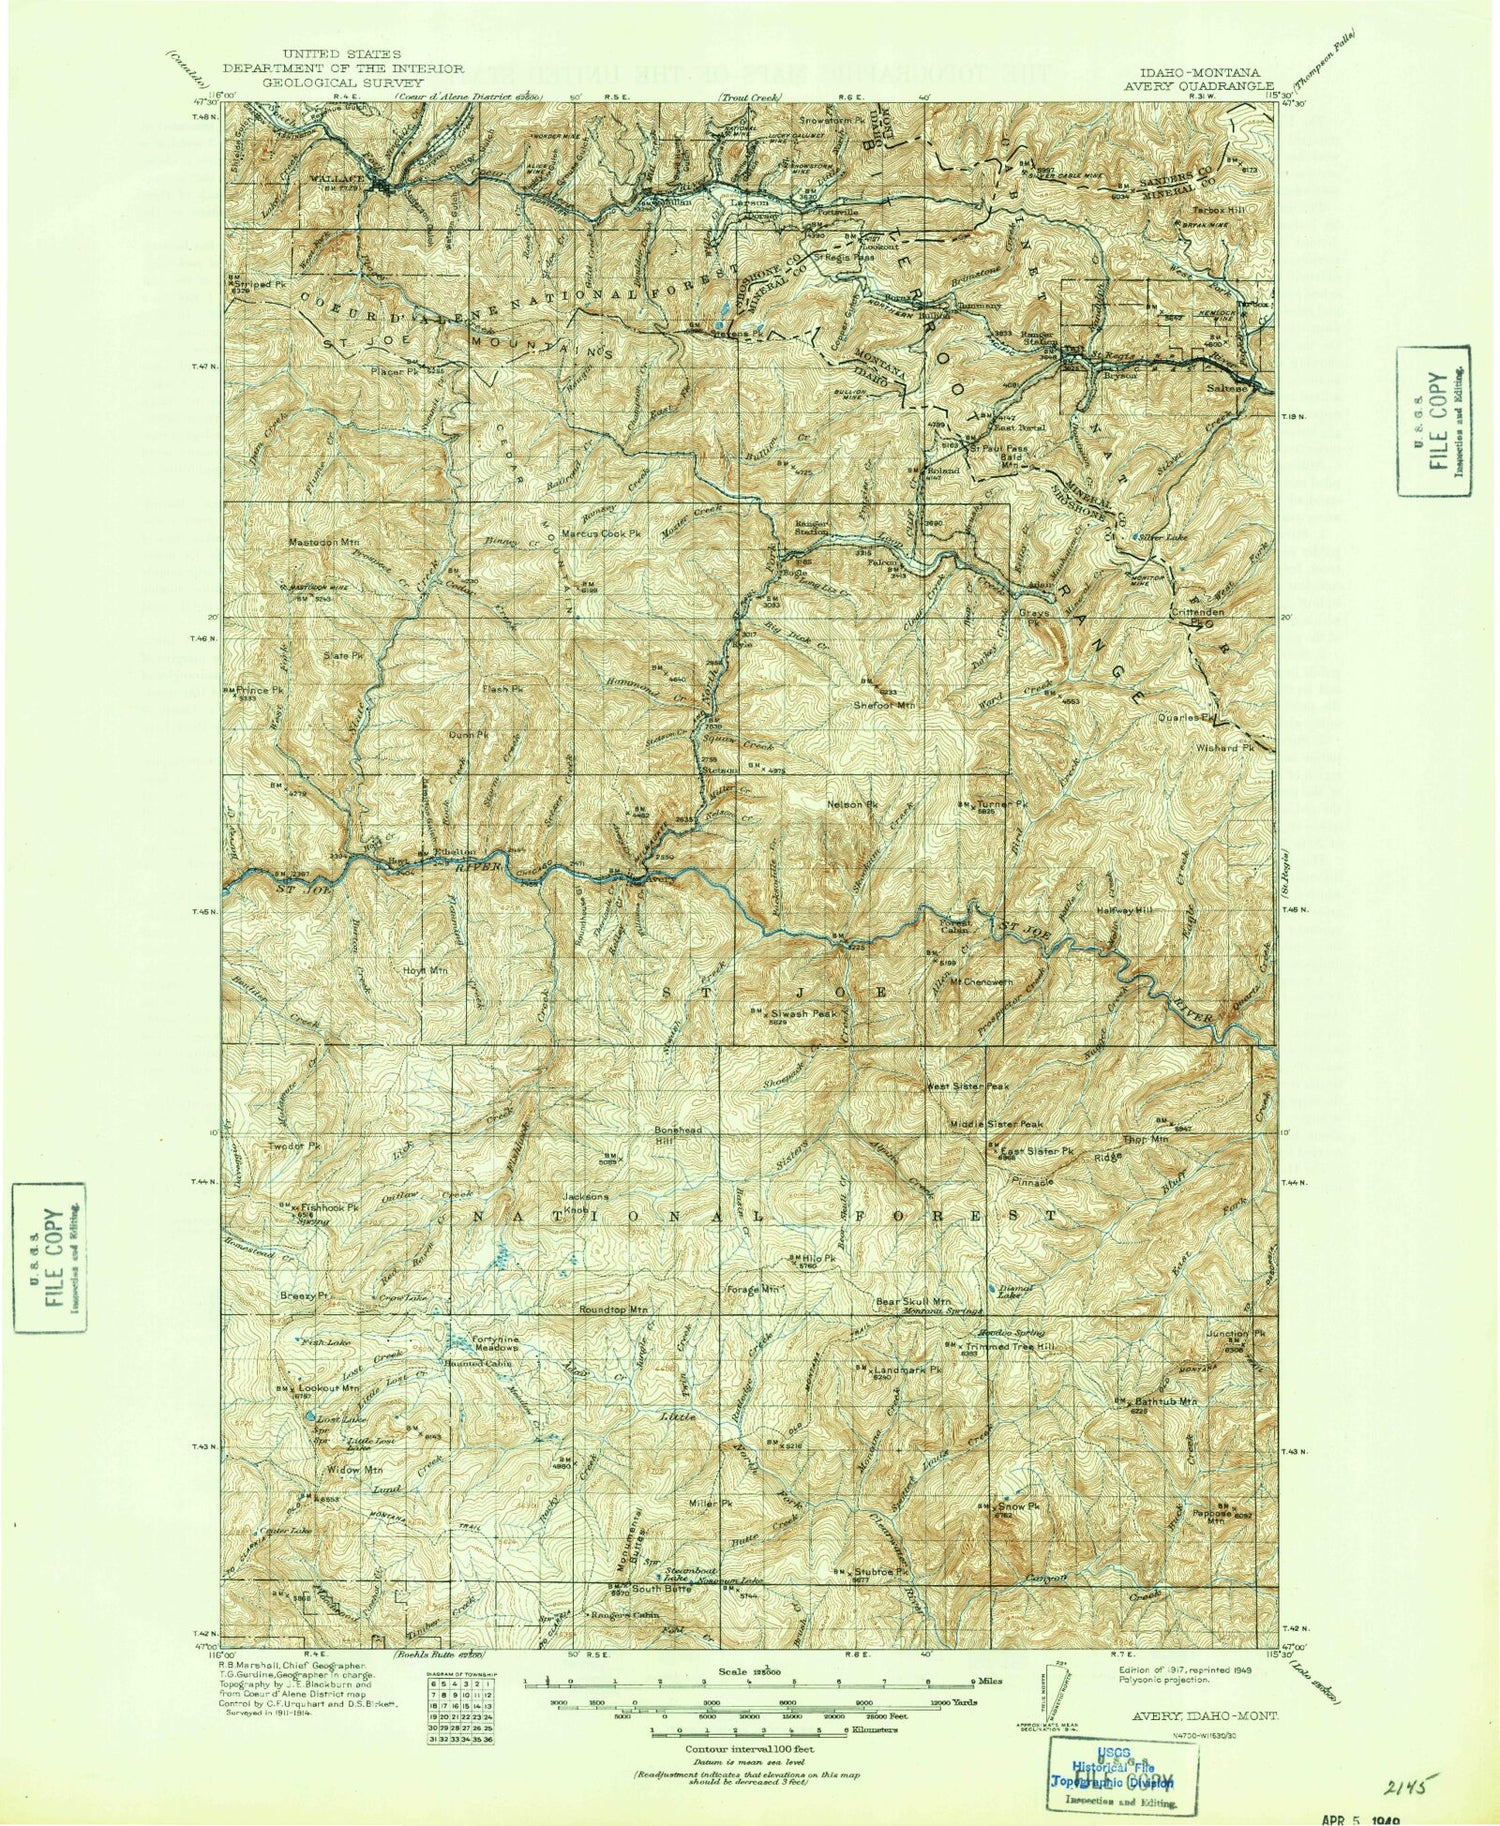 Historic 1917 Avery Idaho 30'x30' Topo Map Image